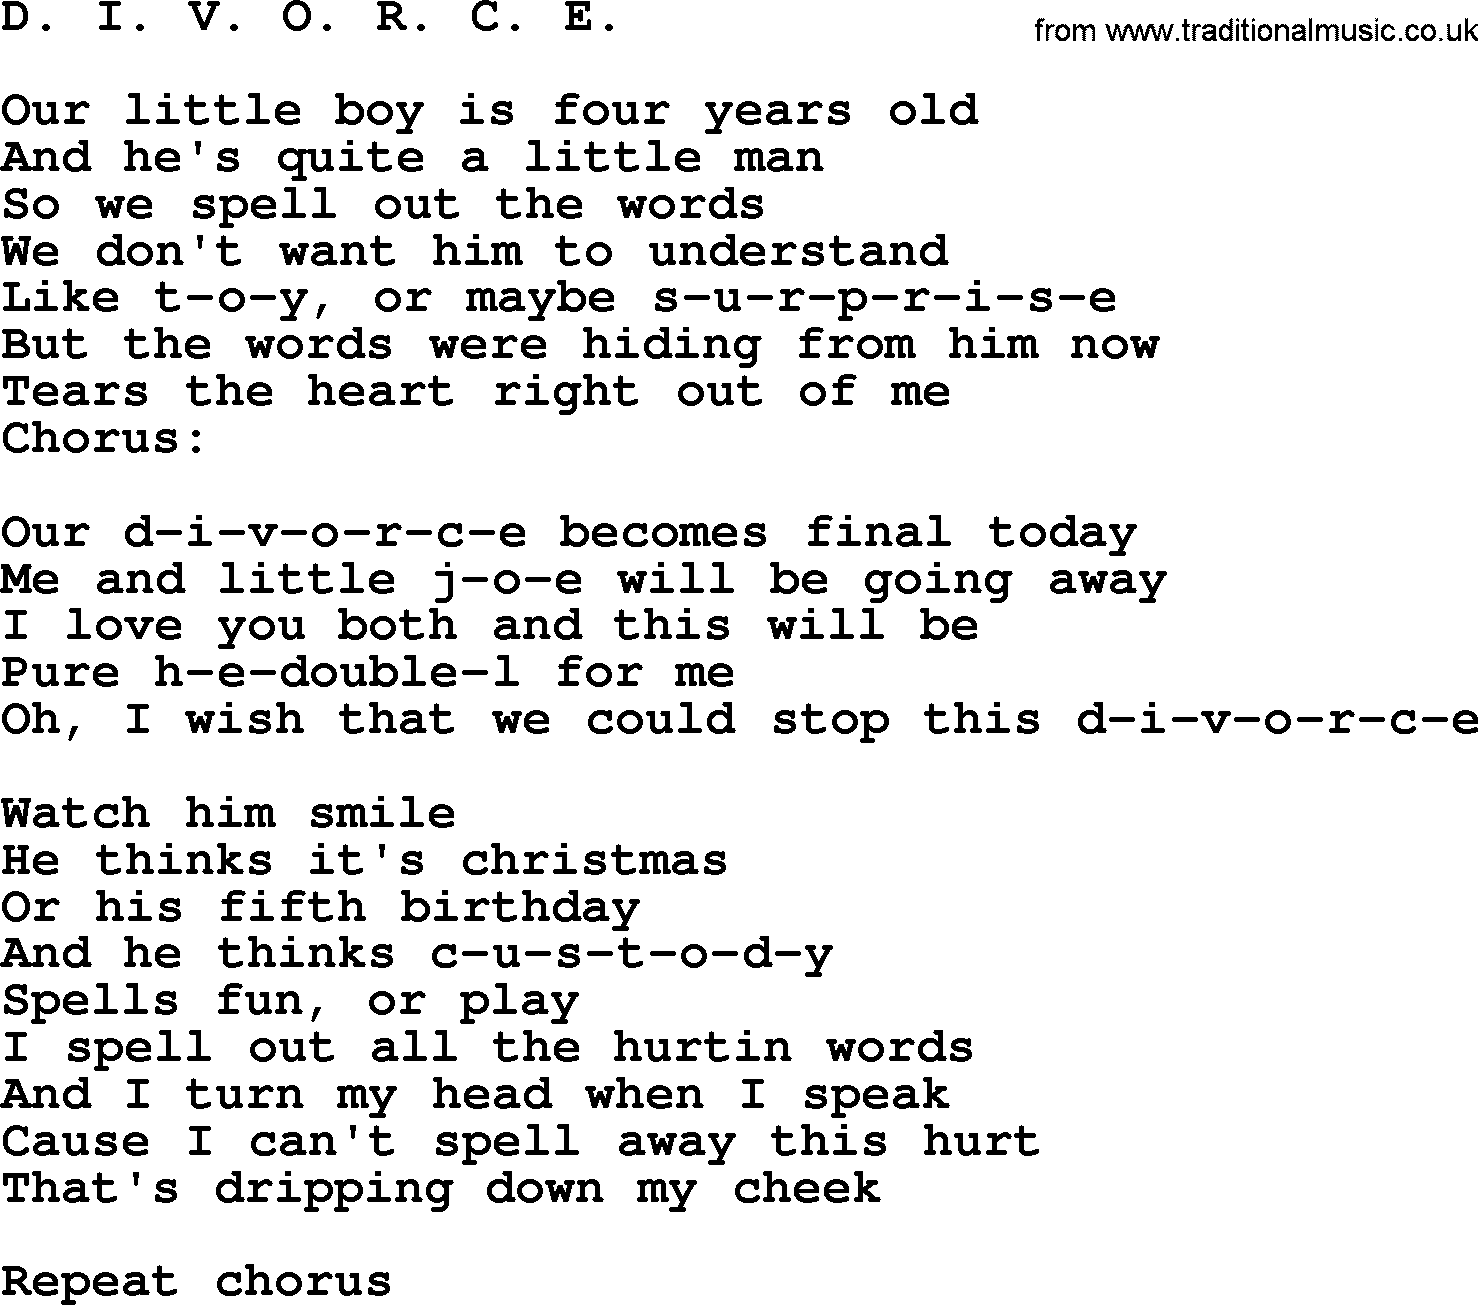 Dolly Parton song D. I. V. O. R. C. E..txt lyrics